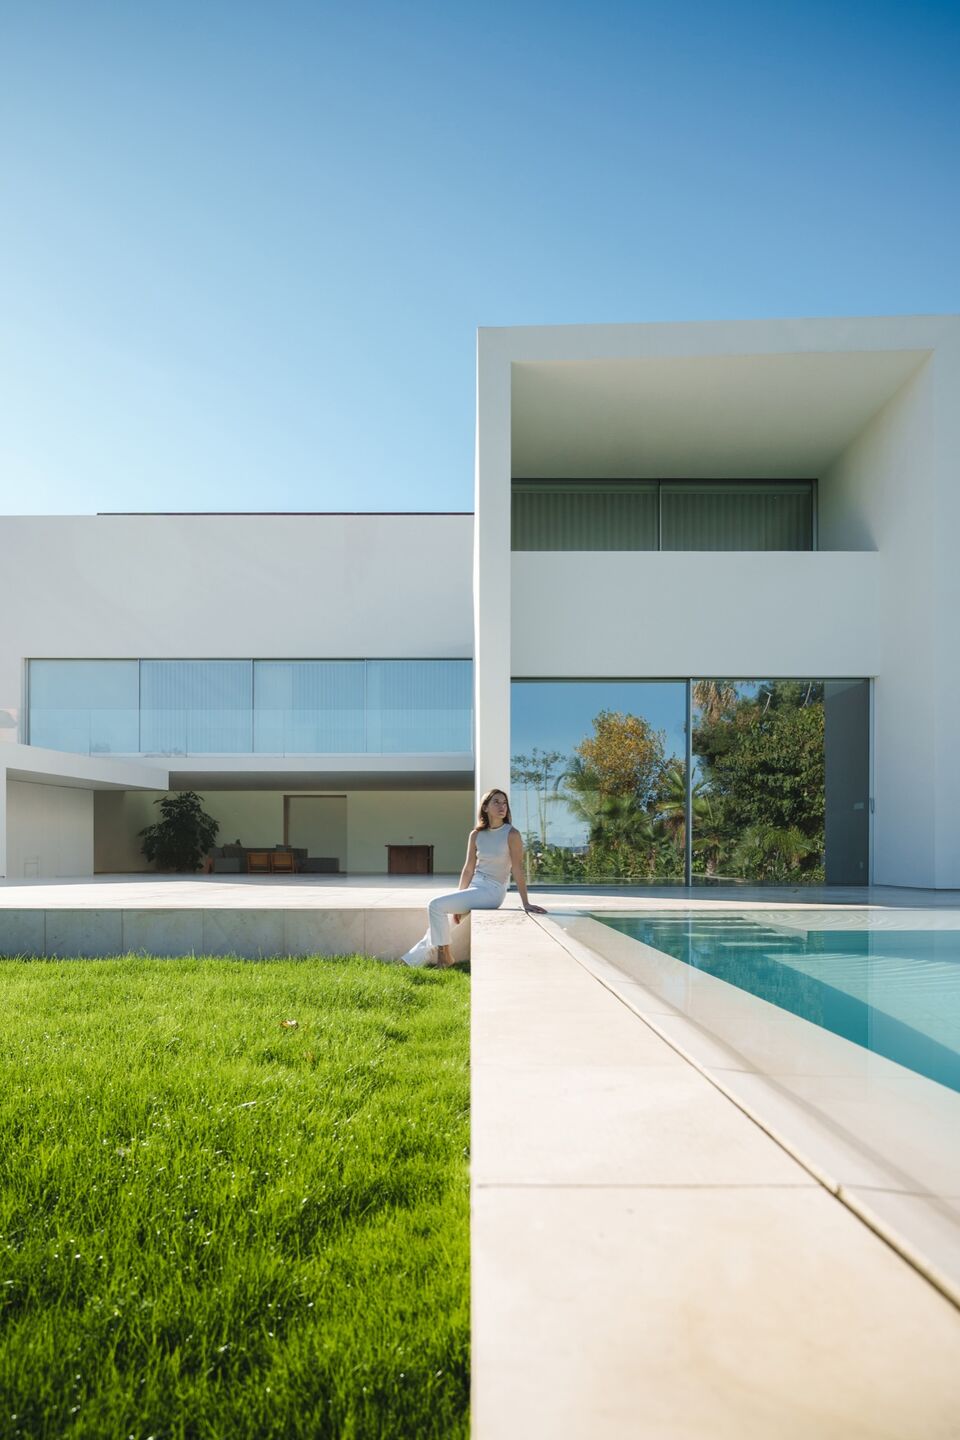 別墅設計,別墅設計案例,Fran Silvestre Arquitectos,西班牙,國外別墅設計案例,巴倫西亞,白色別墅,極簡主義,極簡風格